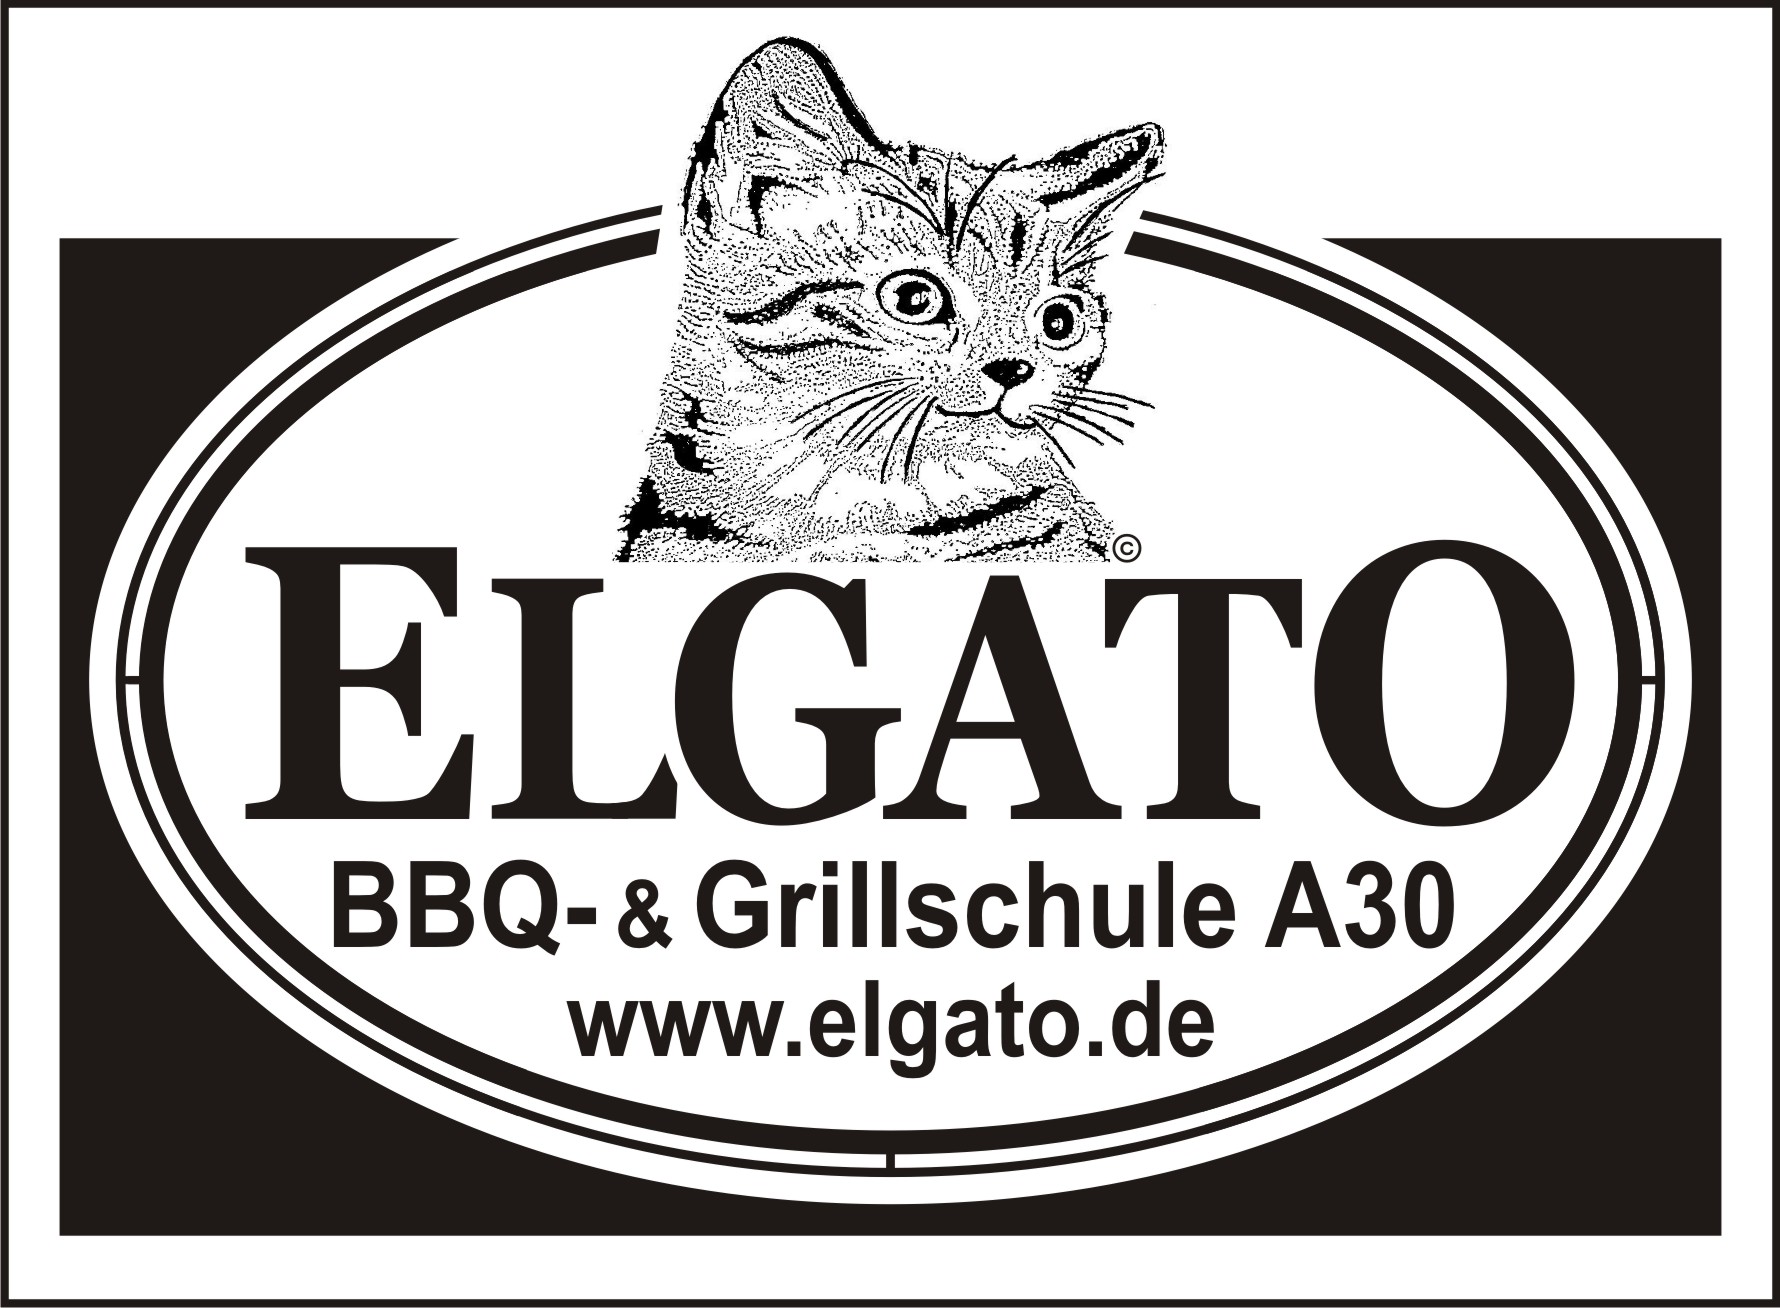 Das ELGATO-LOGO für die BBQ- und Grillschule